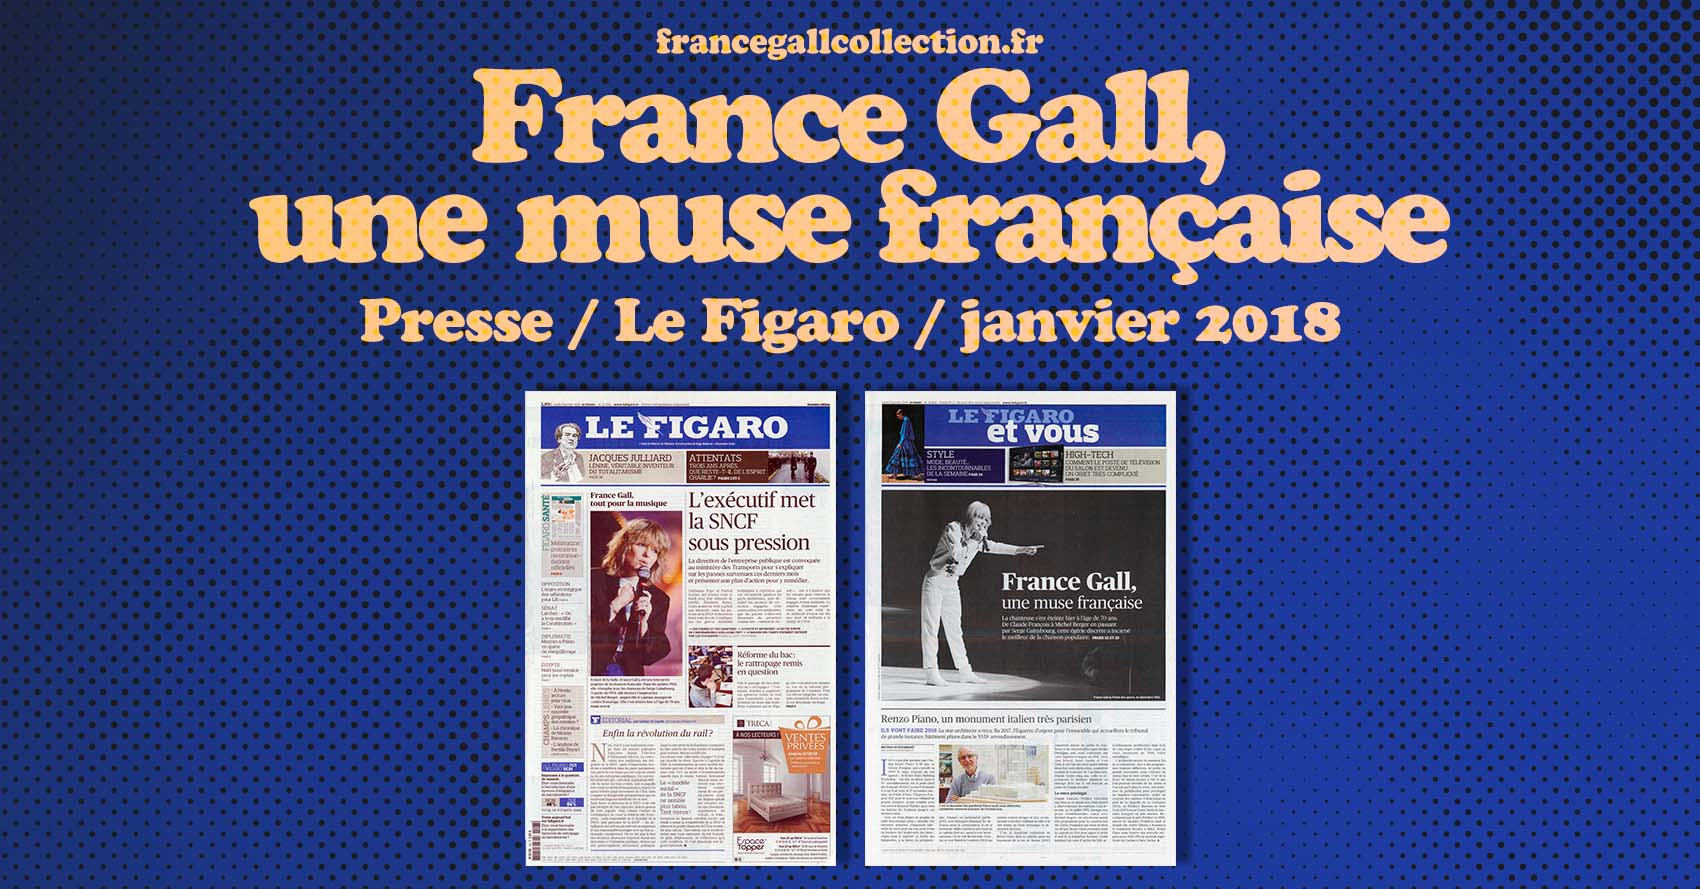 France Gall s'est éteinte hier à l'âge de 70 ans. Dans les années 1960, elle triomphe avec les chansons de Serge Gainsbourg. À partir de 1974, elle devient l'inspiratrice de Michel Berger, auquel elle n'a jamais manqué de rendre hommage.